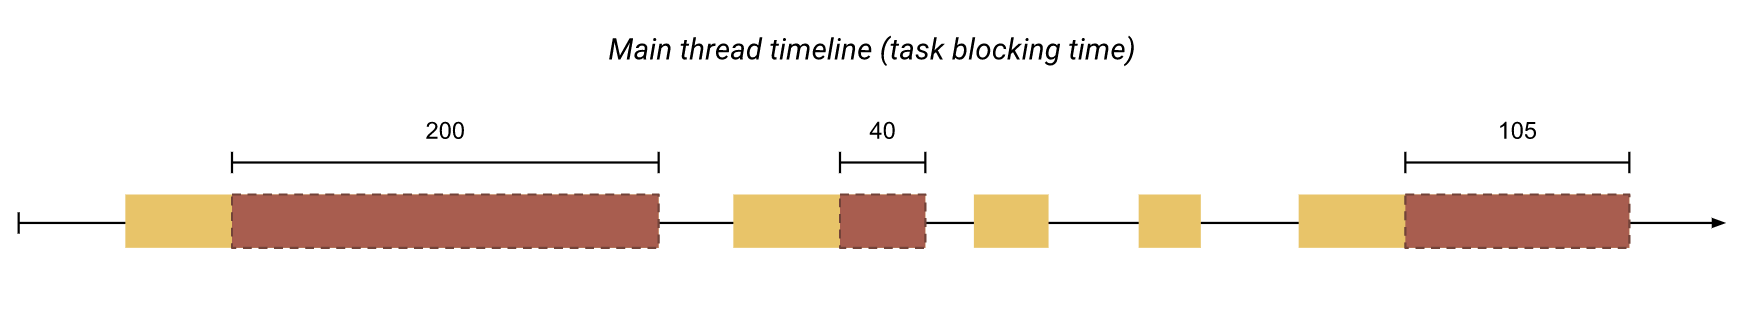 Total blocking time image